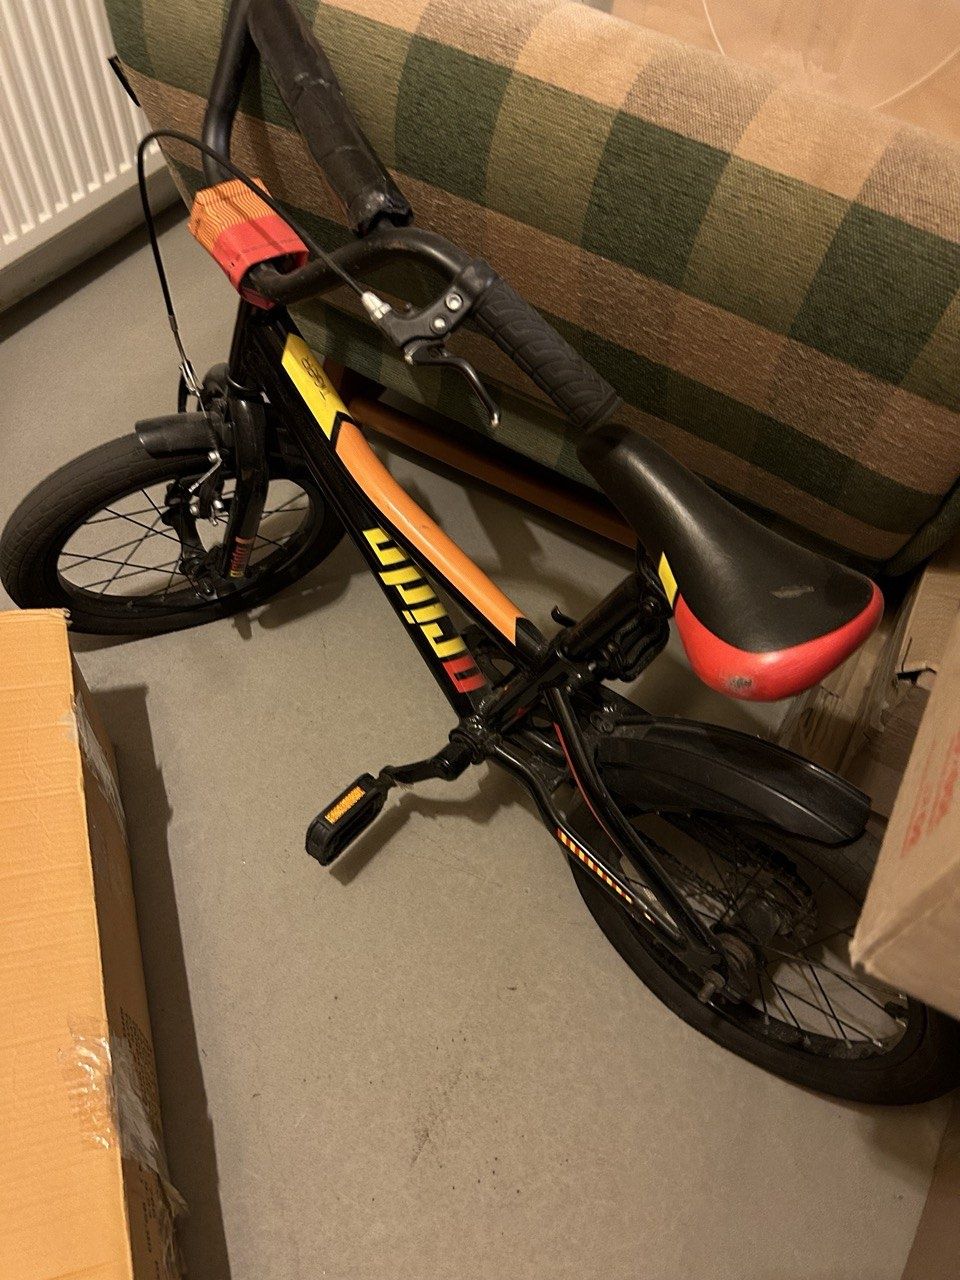 Дитячий велосипед Pride Tiger, колесо 16, 2018, black n red n yellow